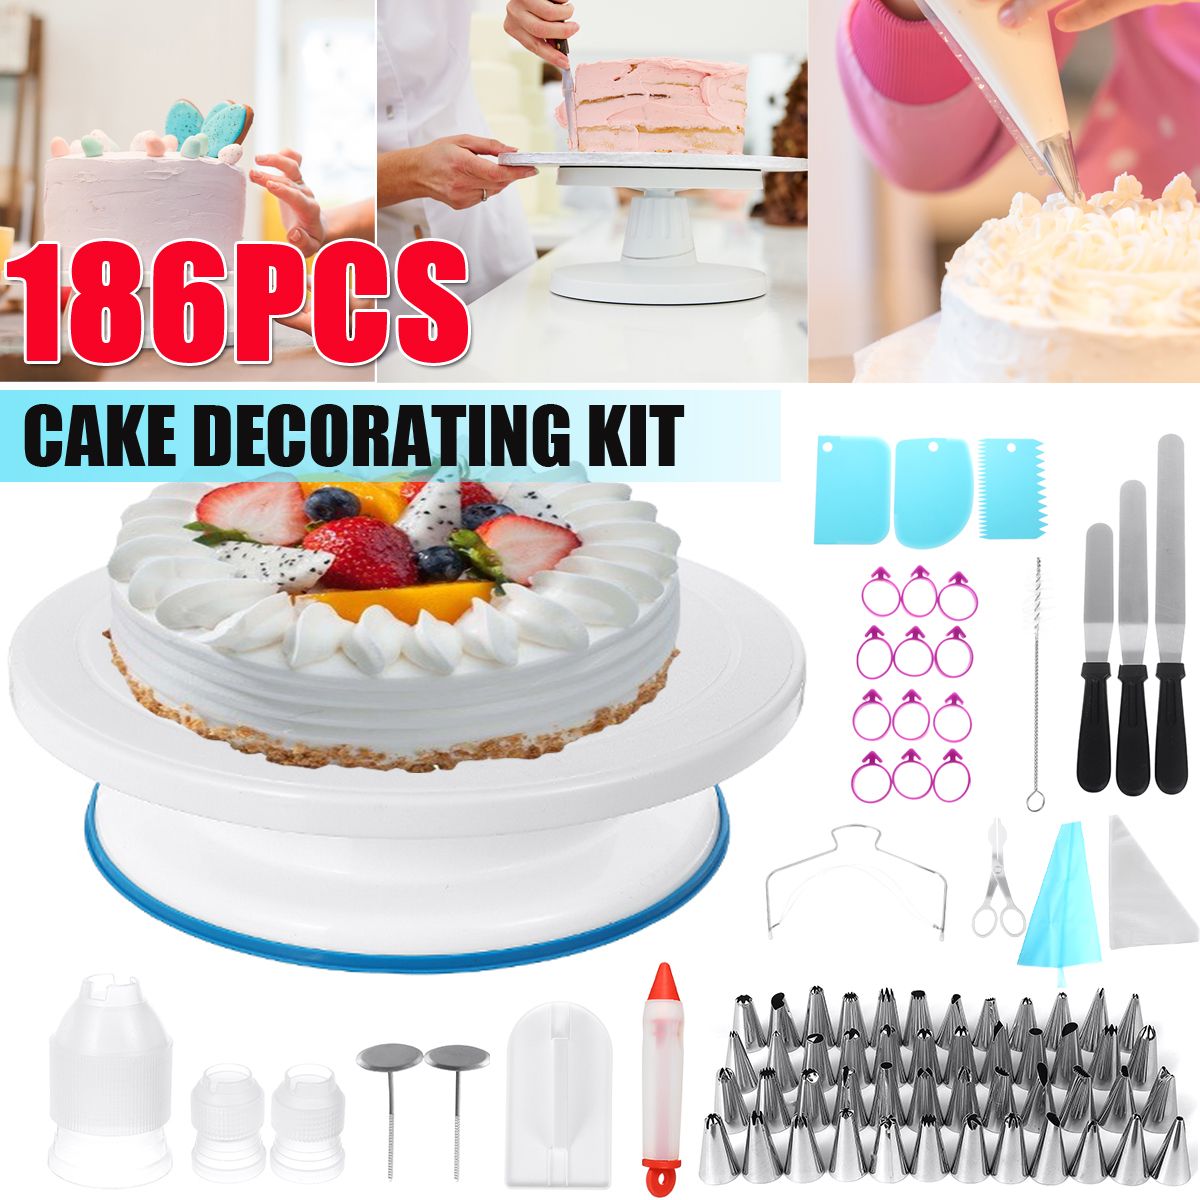 186Pcs-Cake-Decorating-Tool-Kit-Baking-Fondant-Supplies-Turntable-Bag-Tip-Nozzle-1765683